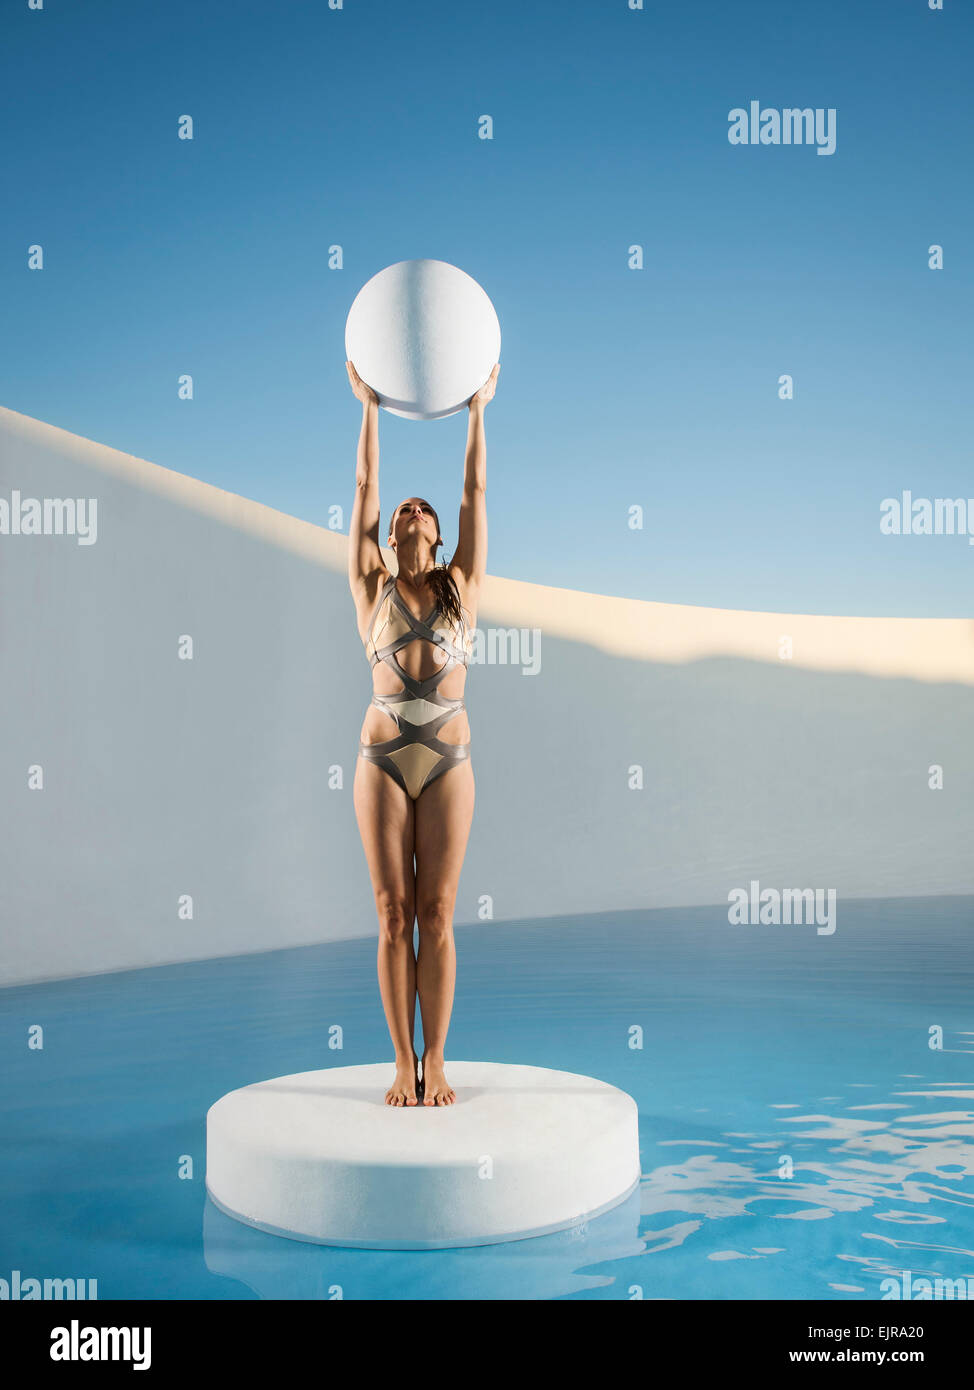 Caucasian woman holding sphere sur banc de glace Banque D'Images